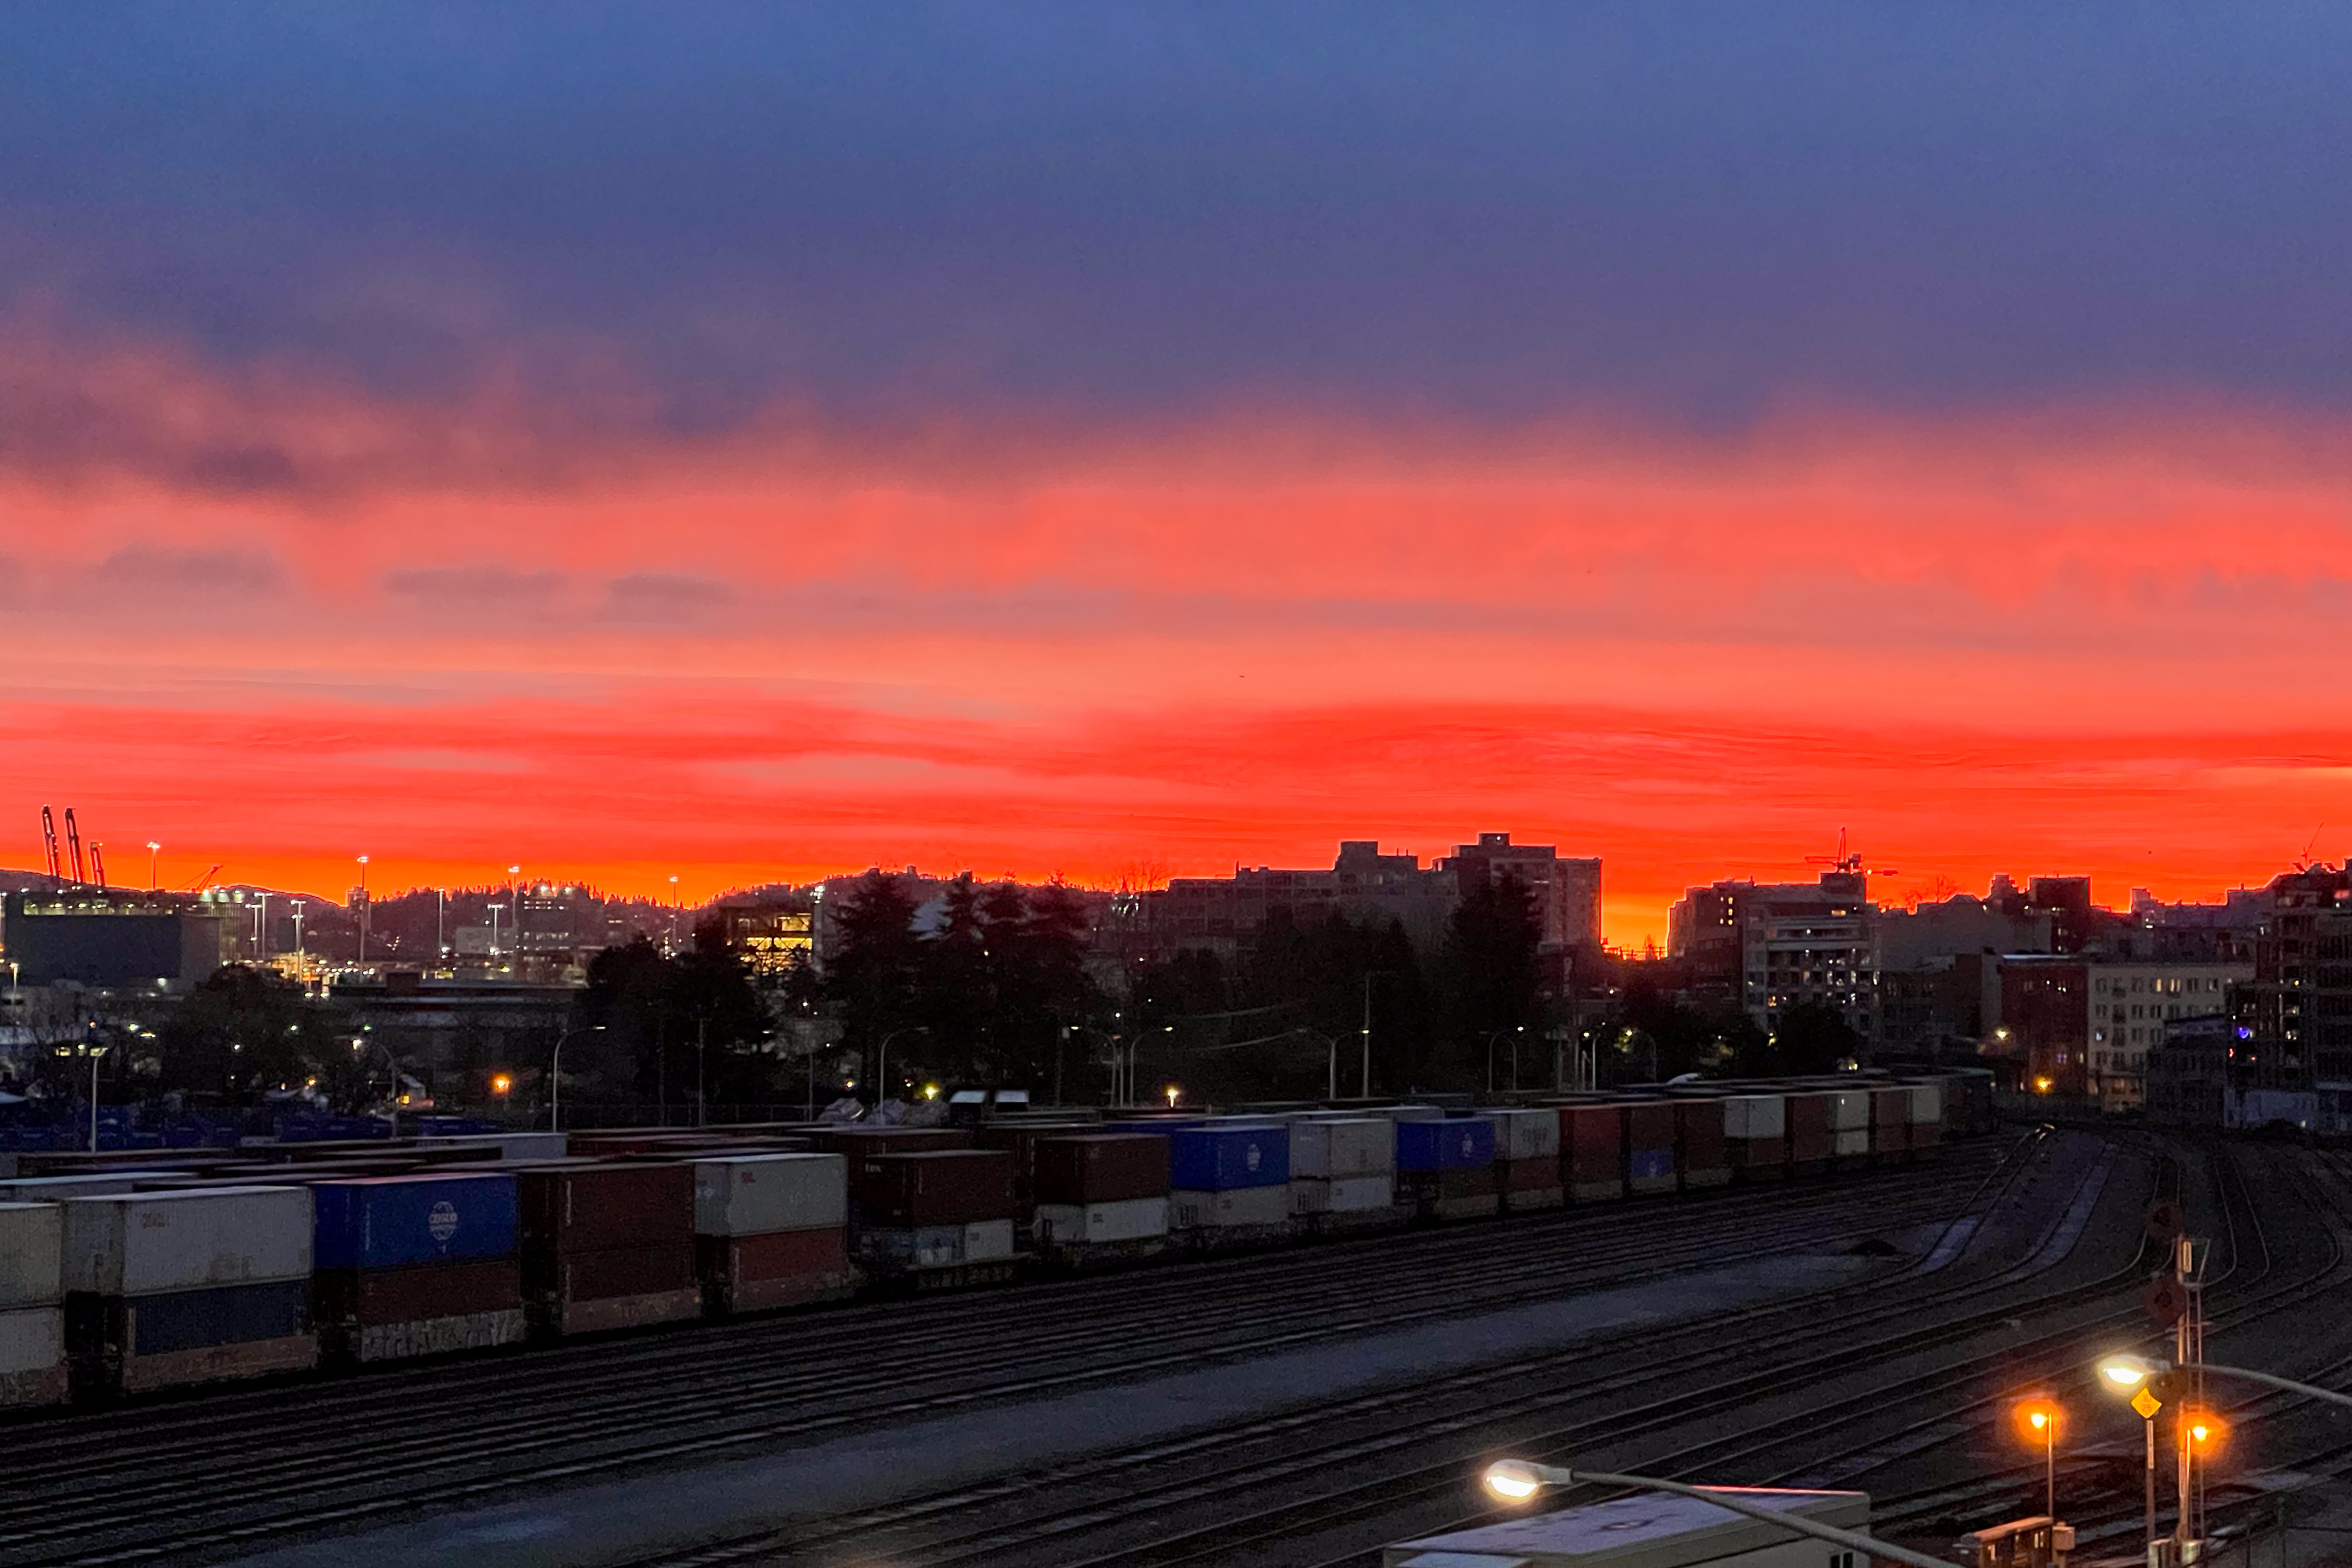 sunrise over railroad tracks